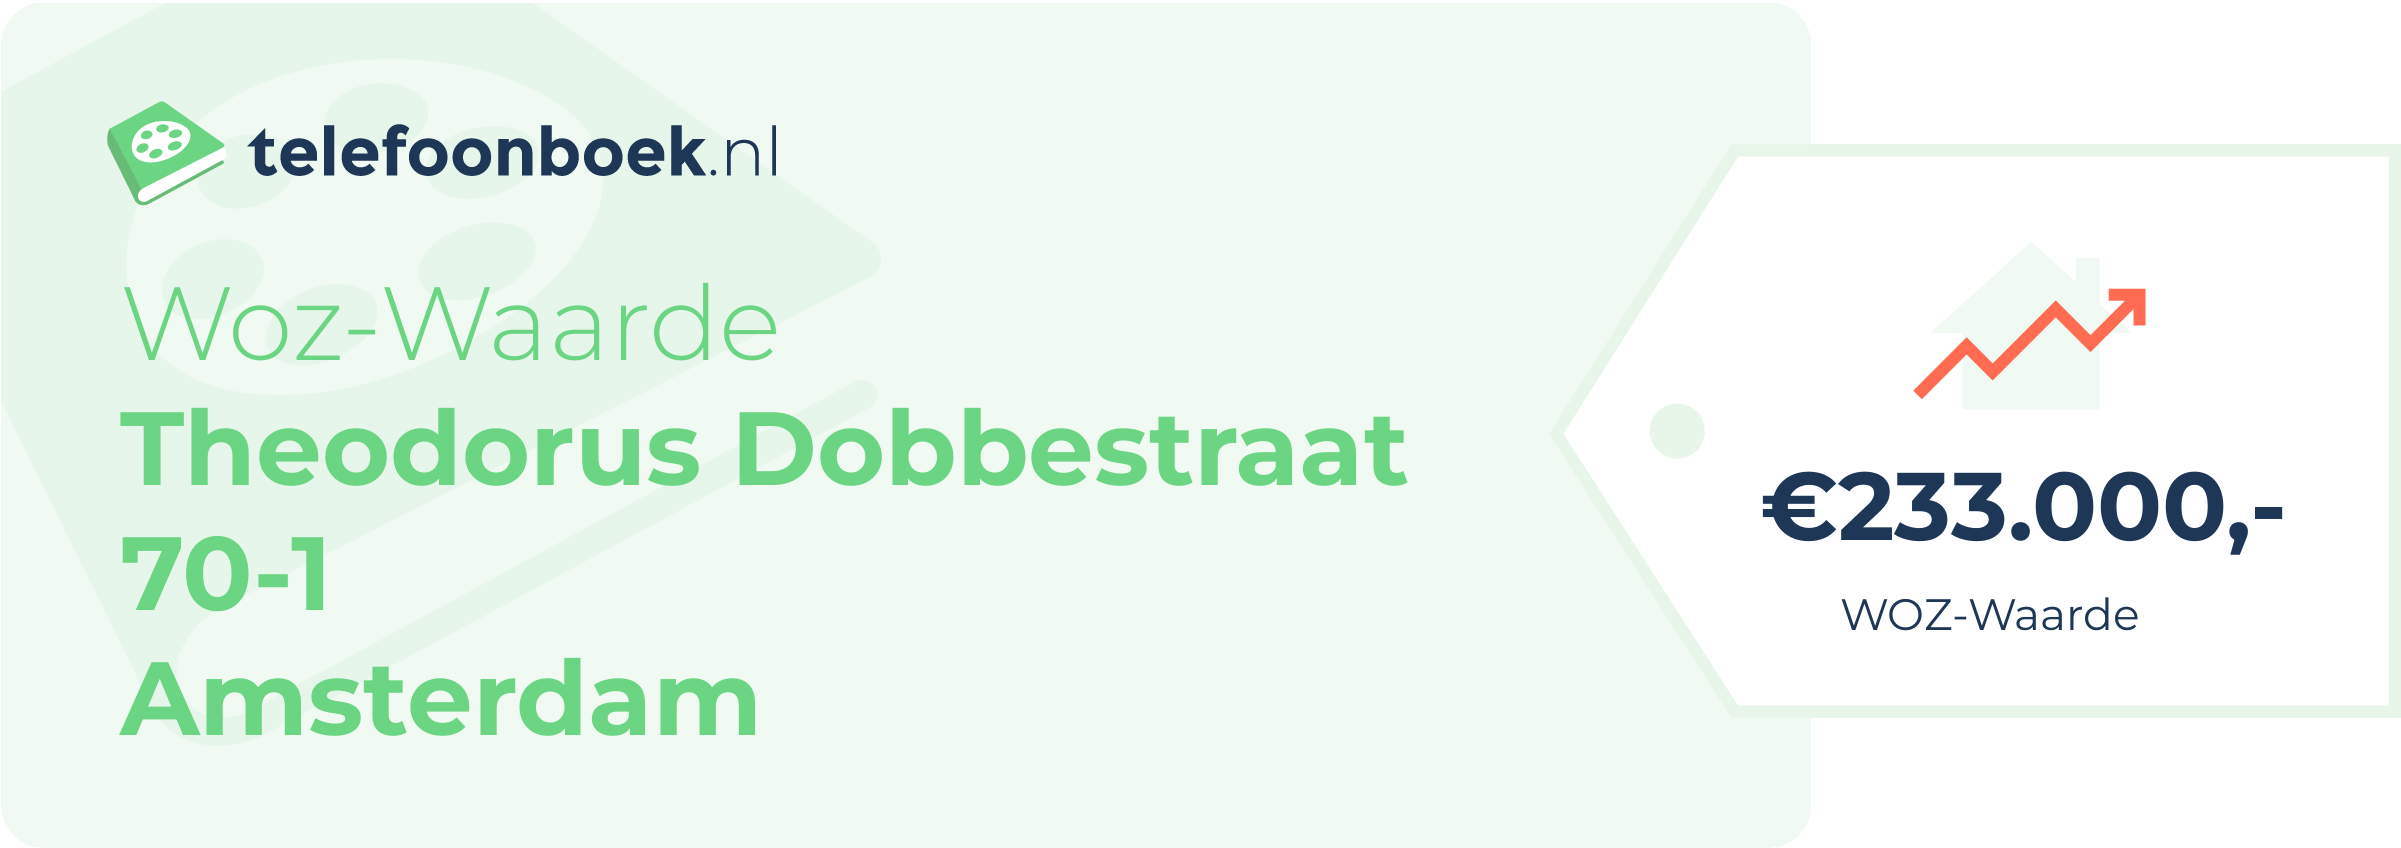 WOZ-waarde Theodorus Dobbestraat 70-1 Amsterdam